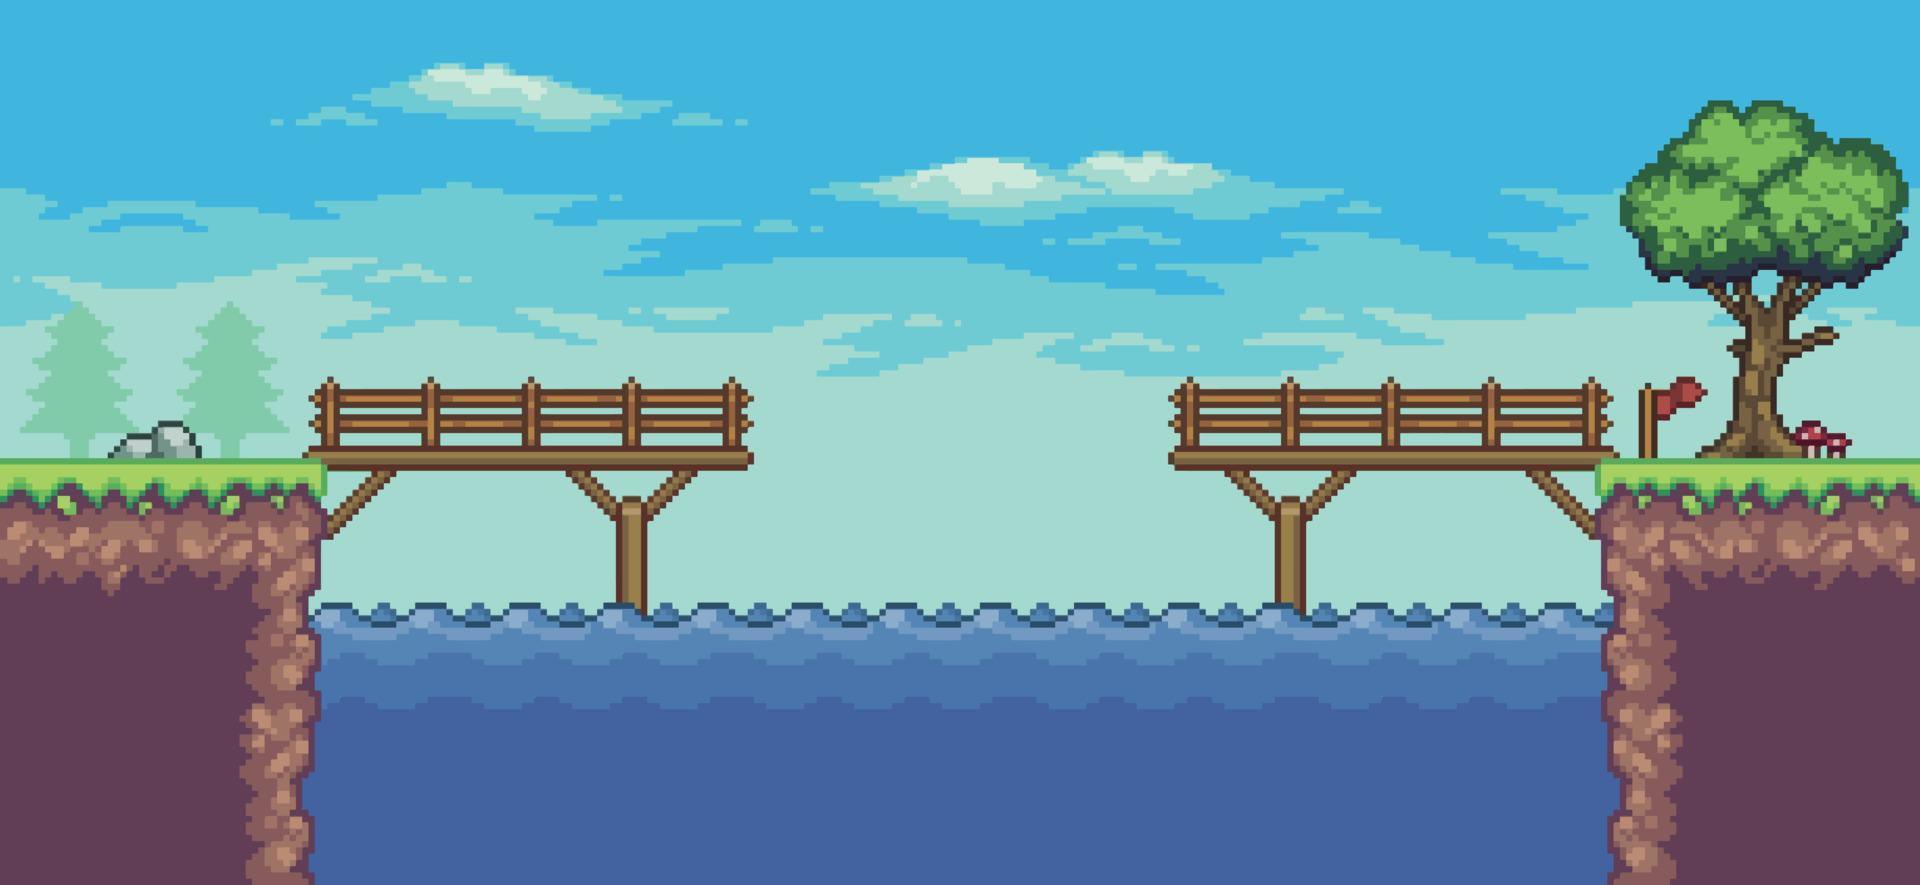 pixel art arkadspelscen med flytande plattform, flod, bro, träd och moln, 8bit bakgrund vektor